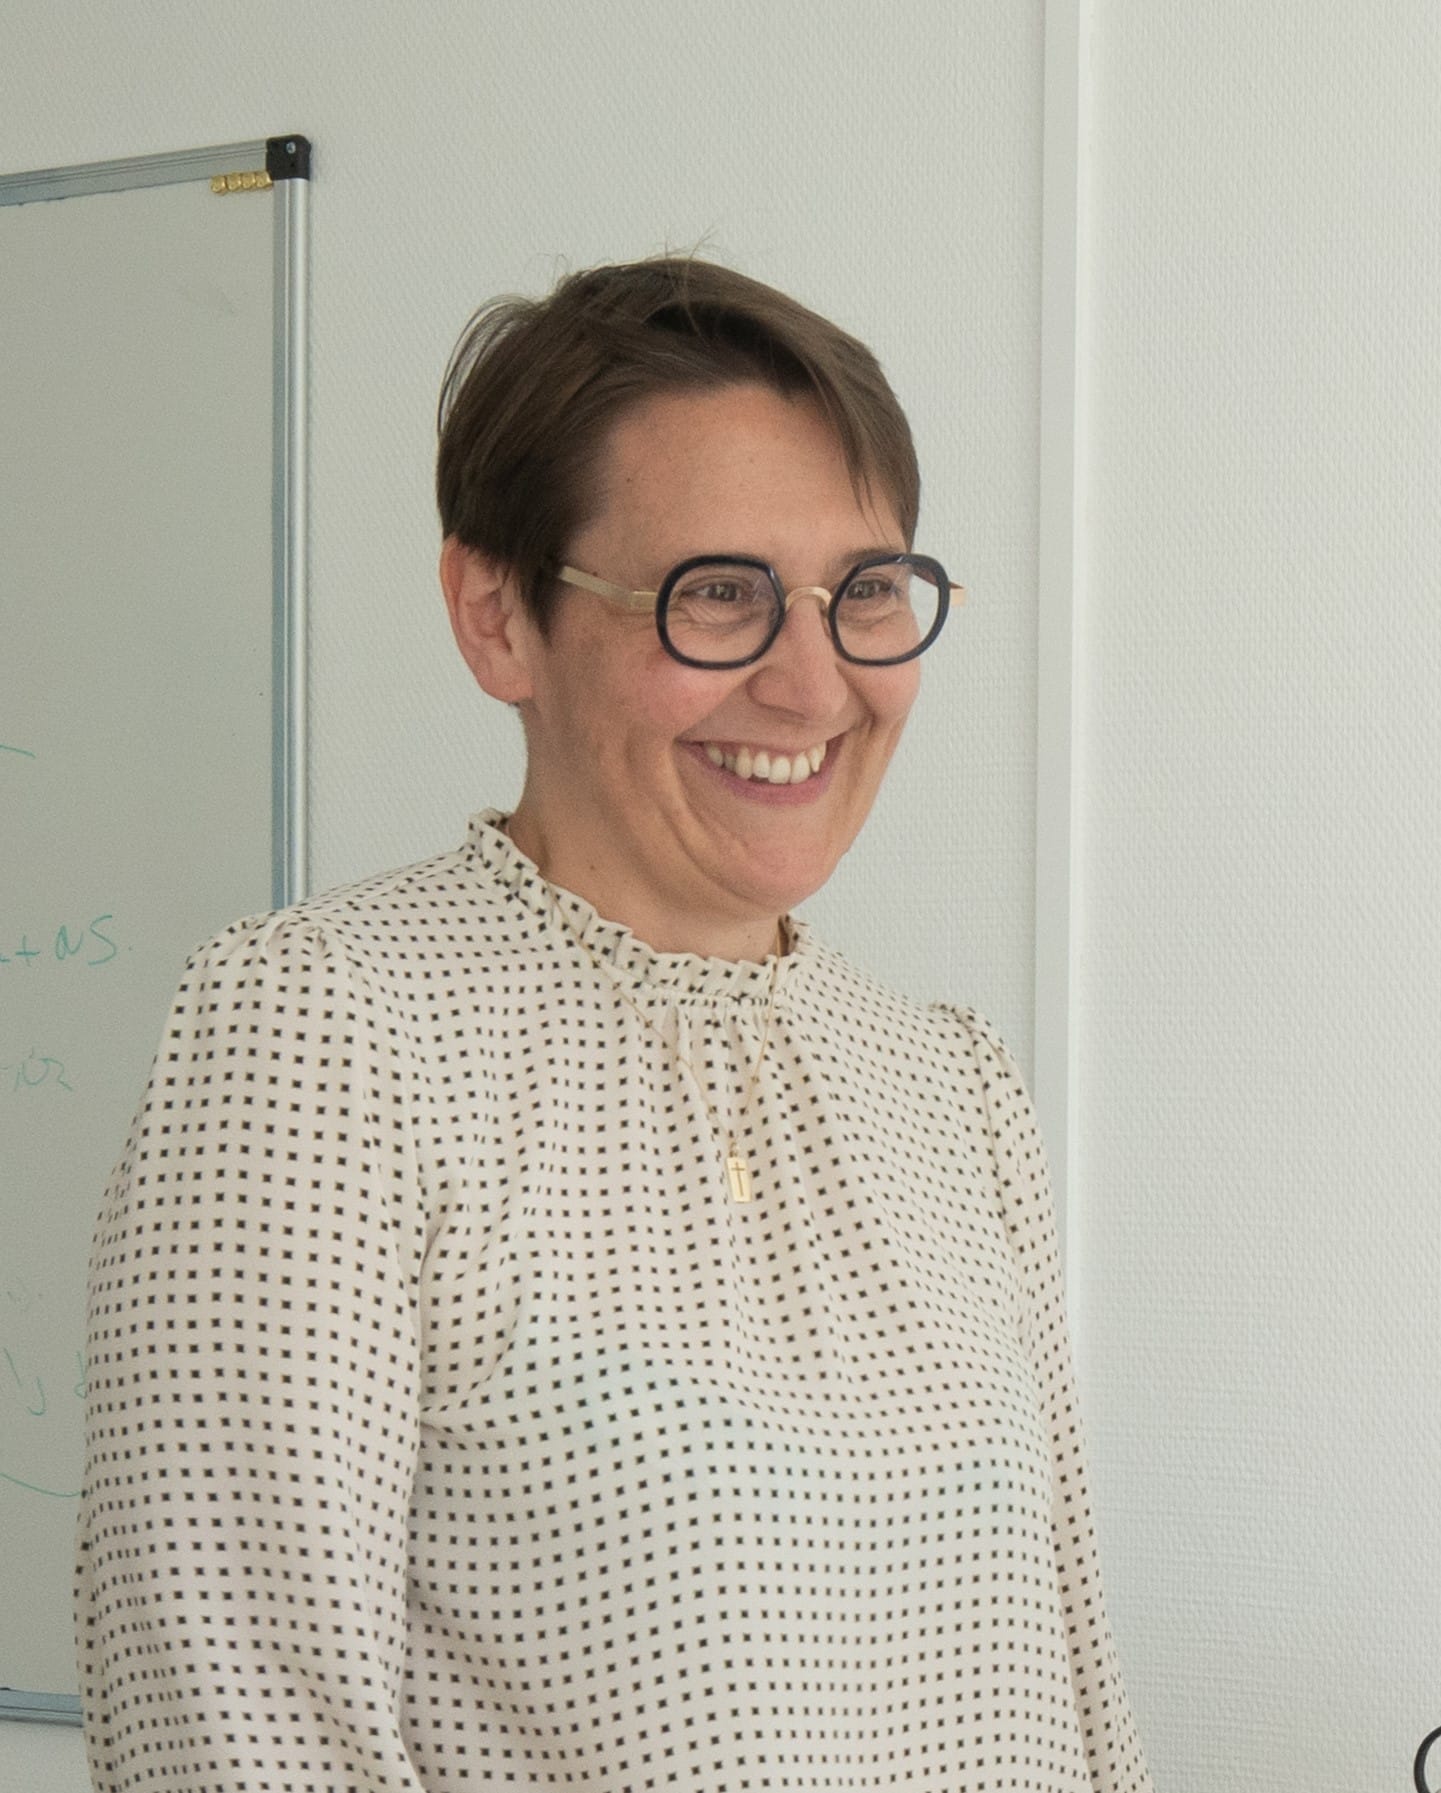 Emmanuelle Landru is the Managing Director of Elan City